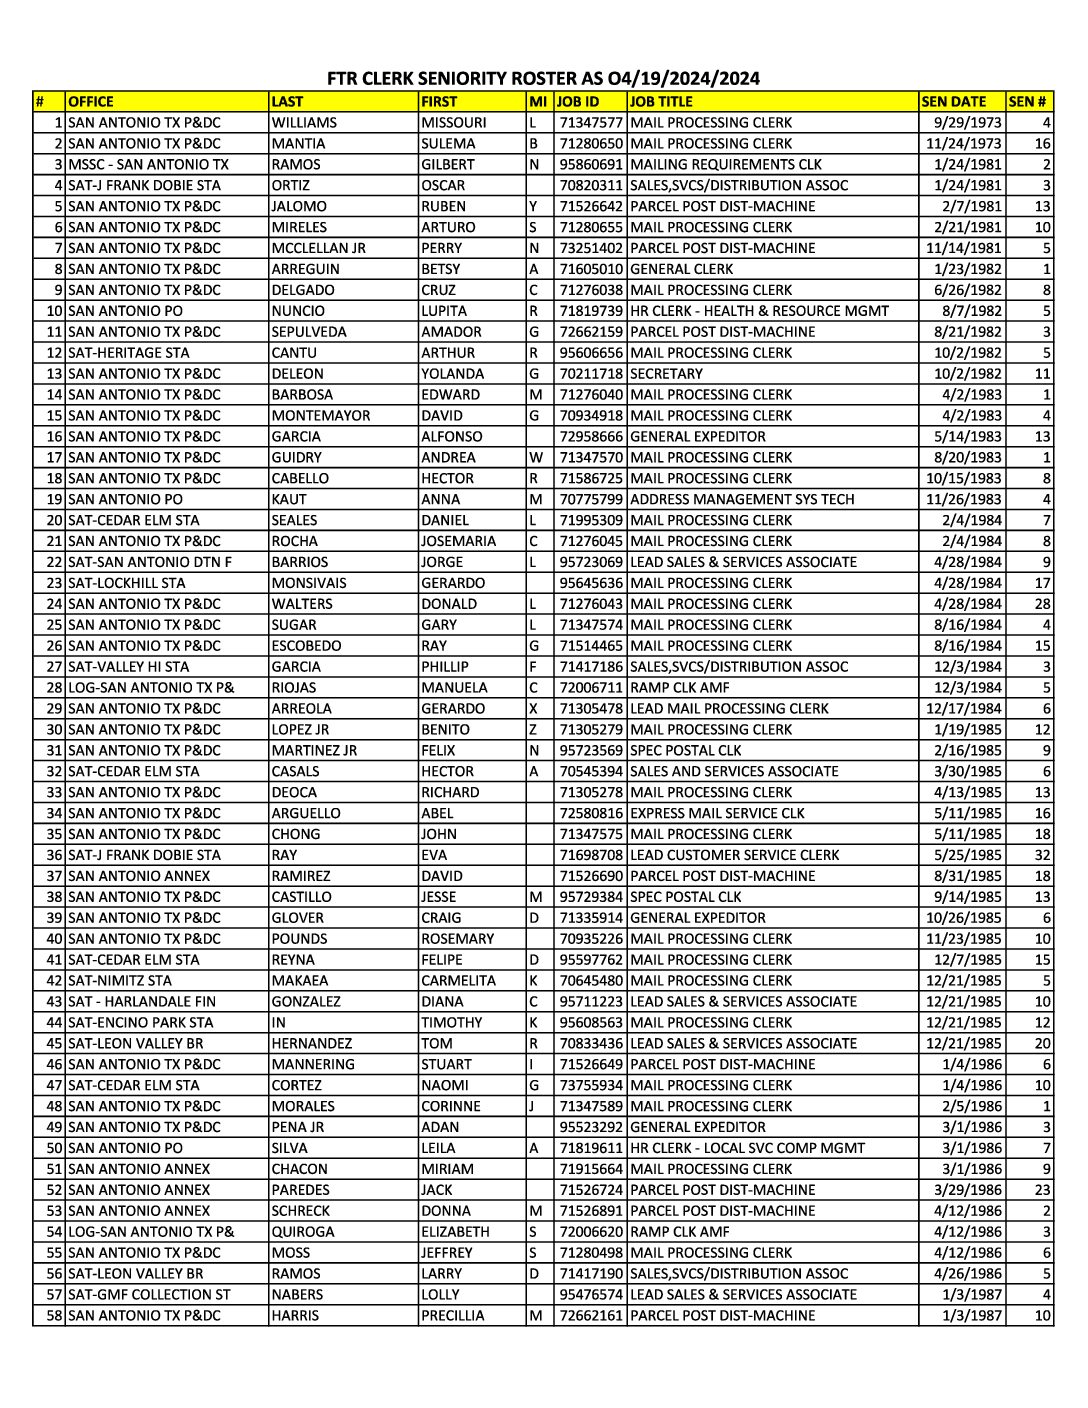 FTR Clerks Seniority as of 04-19-2024 - 